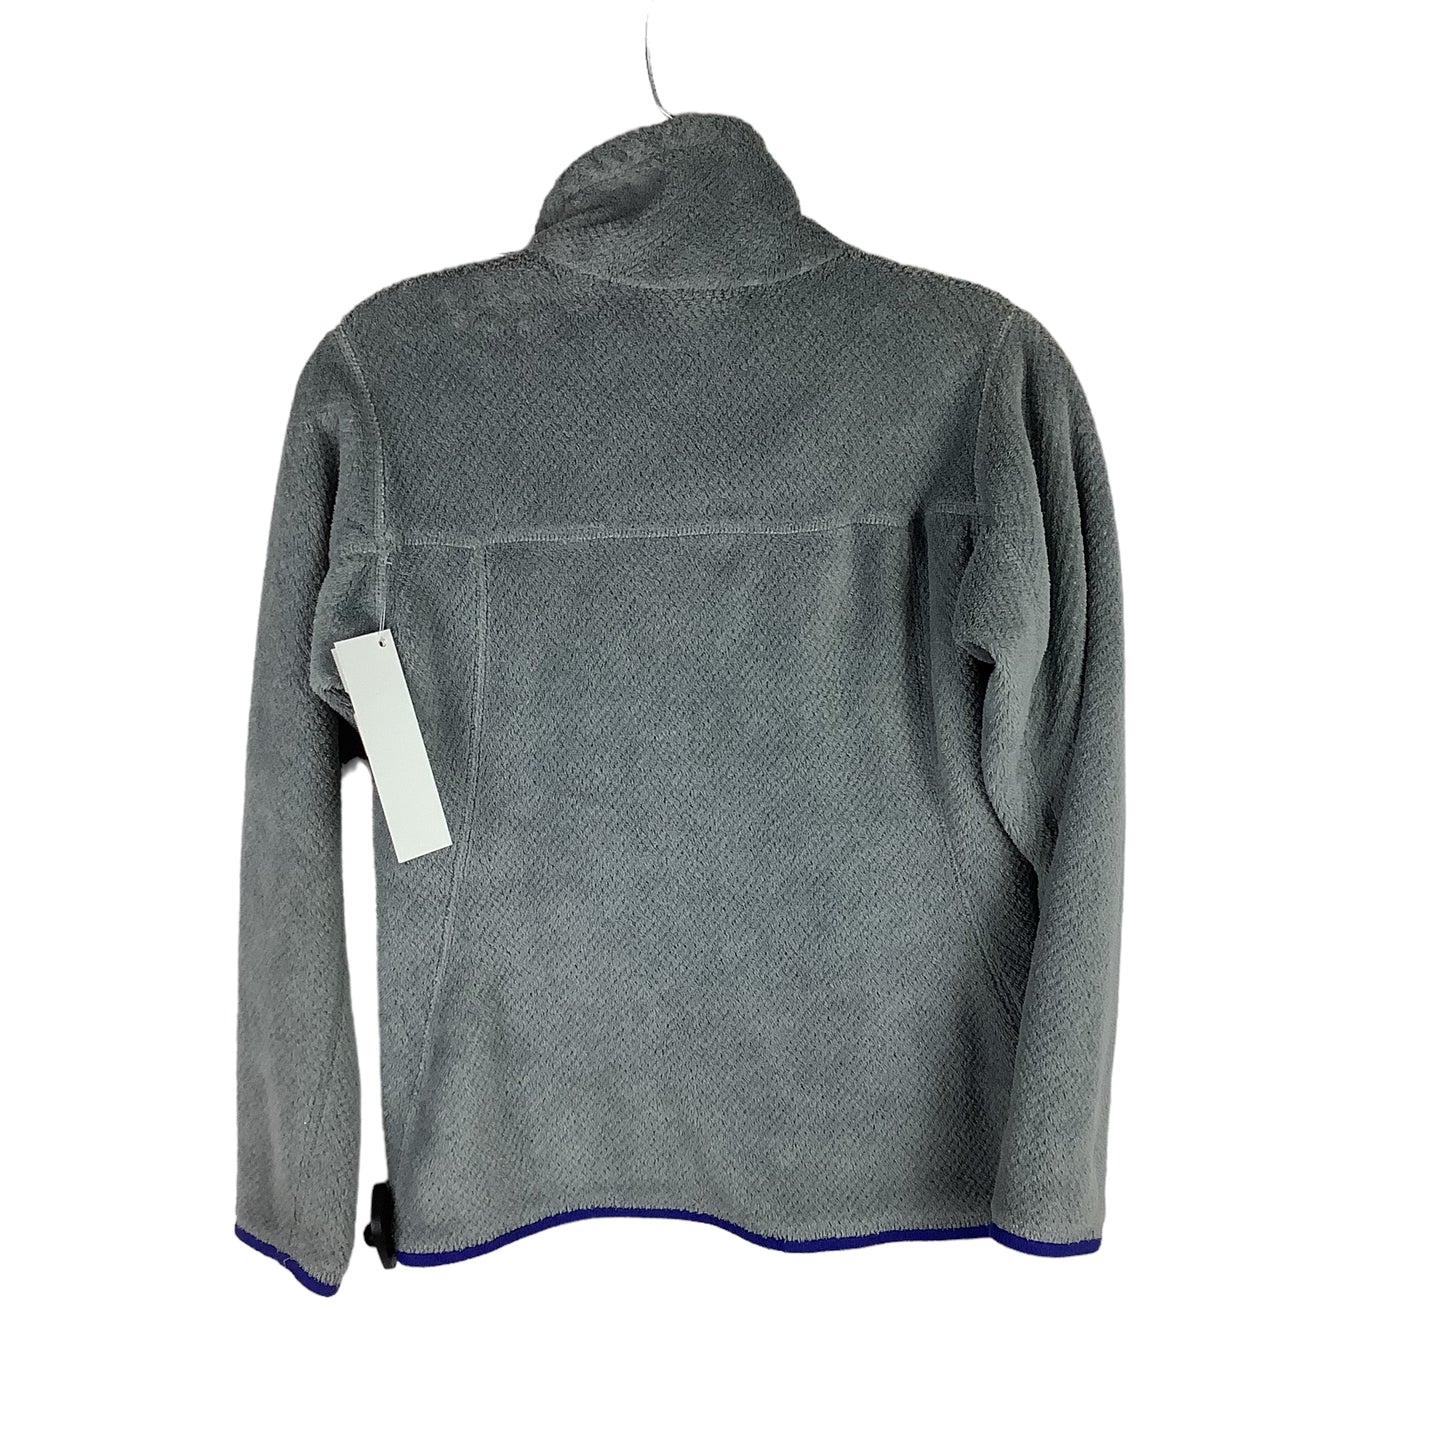 Jacket Designer By Patagonia  Size: Xs